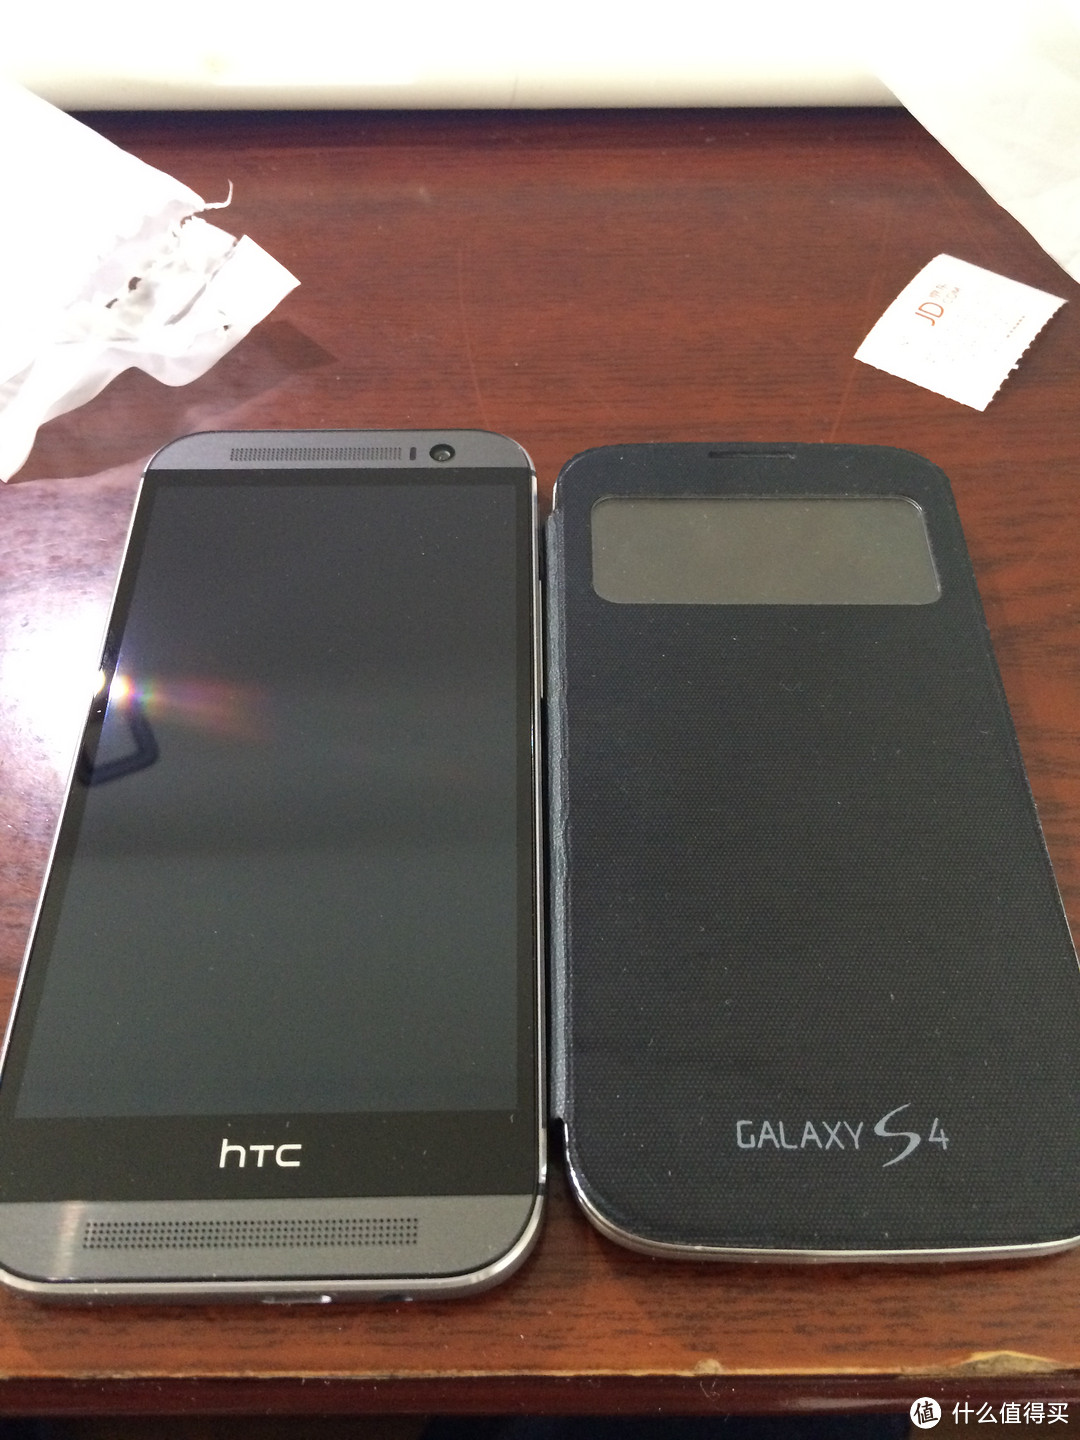 HTC One M8t 4G手机 开箱